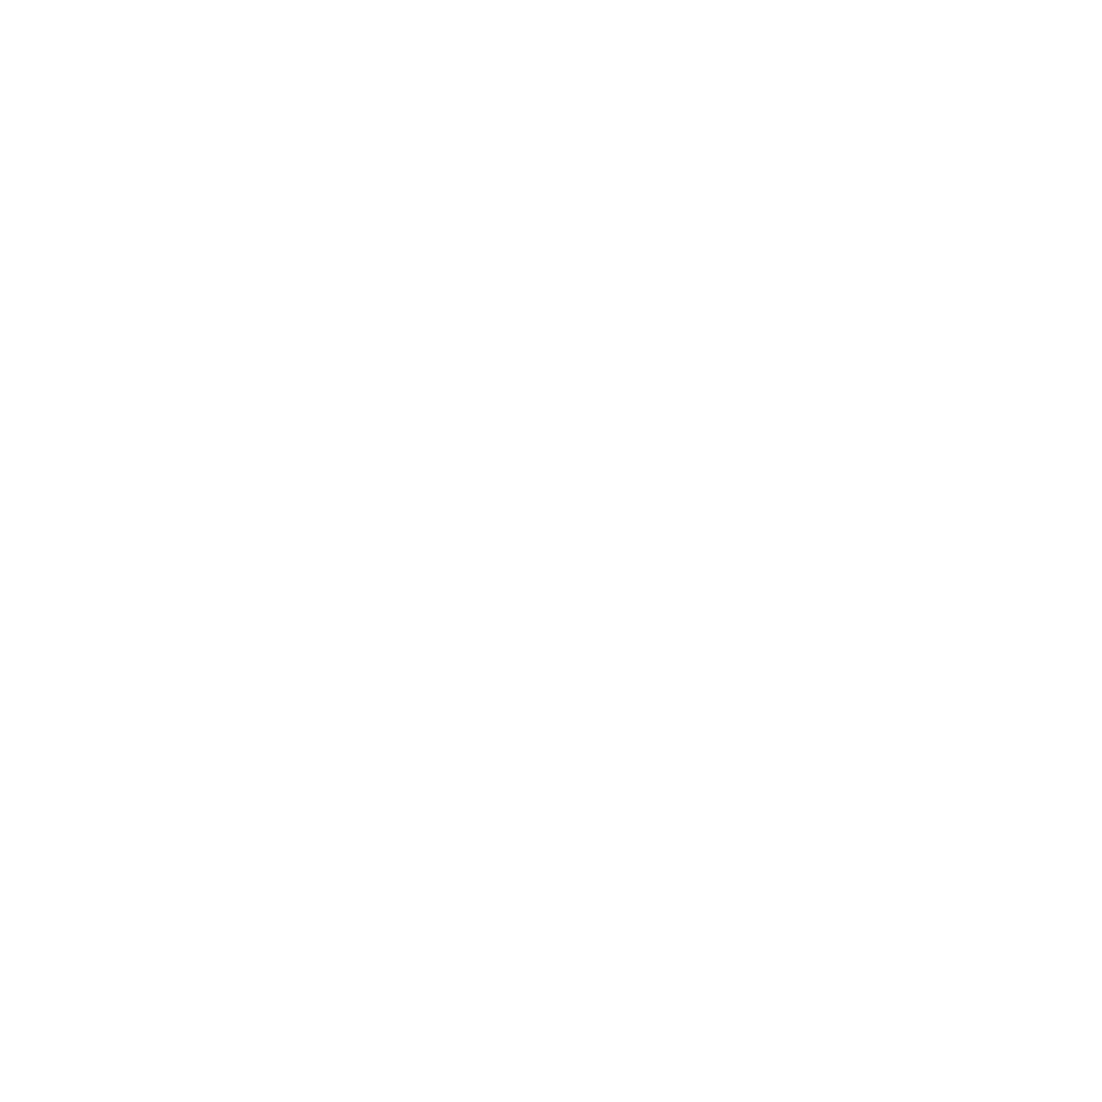 SIA Emerging Award 2020 Visionary